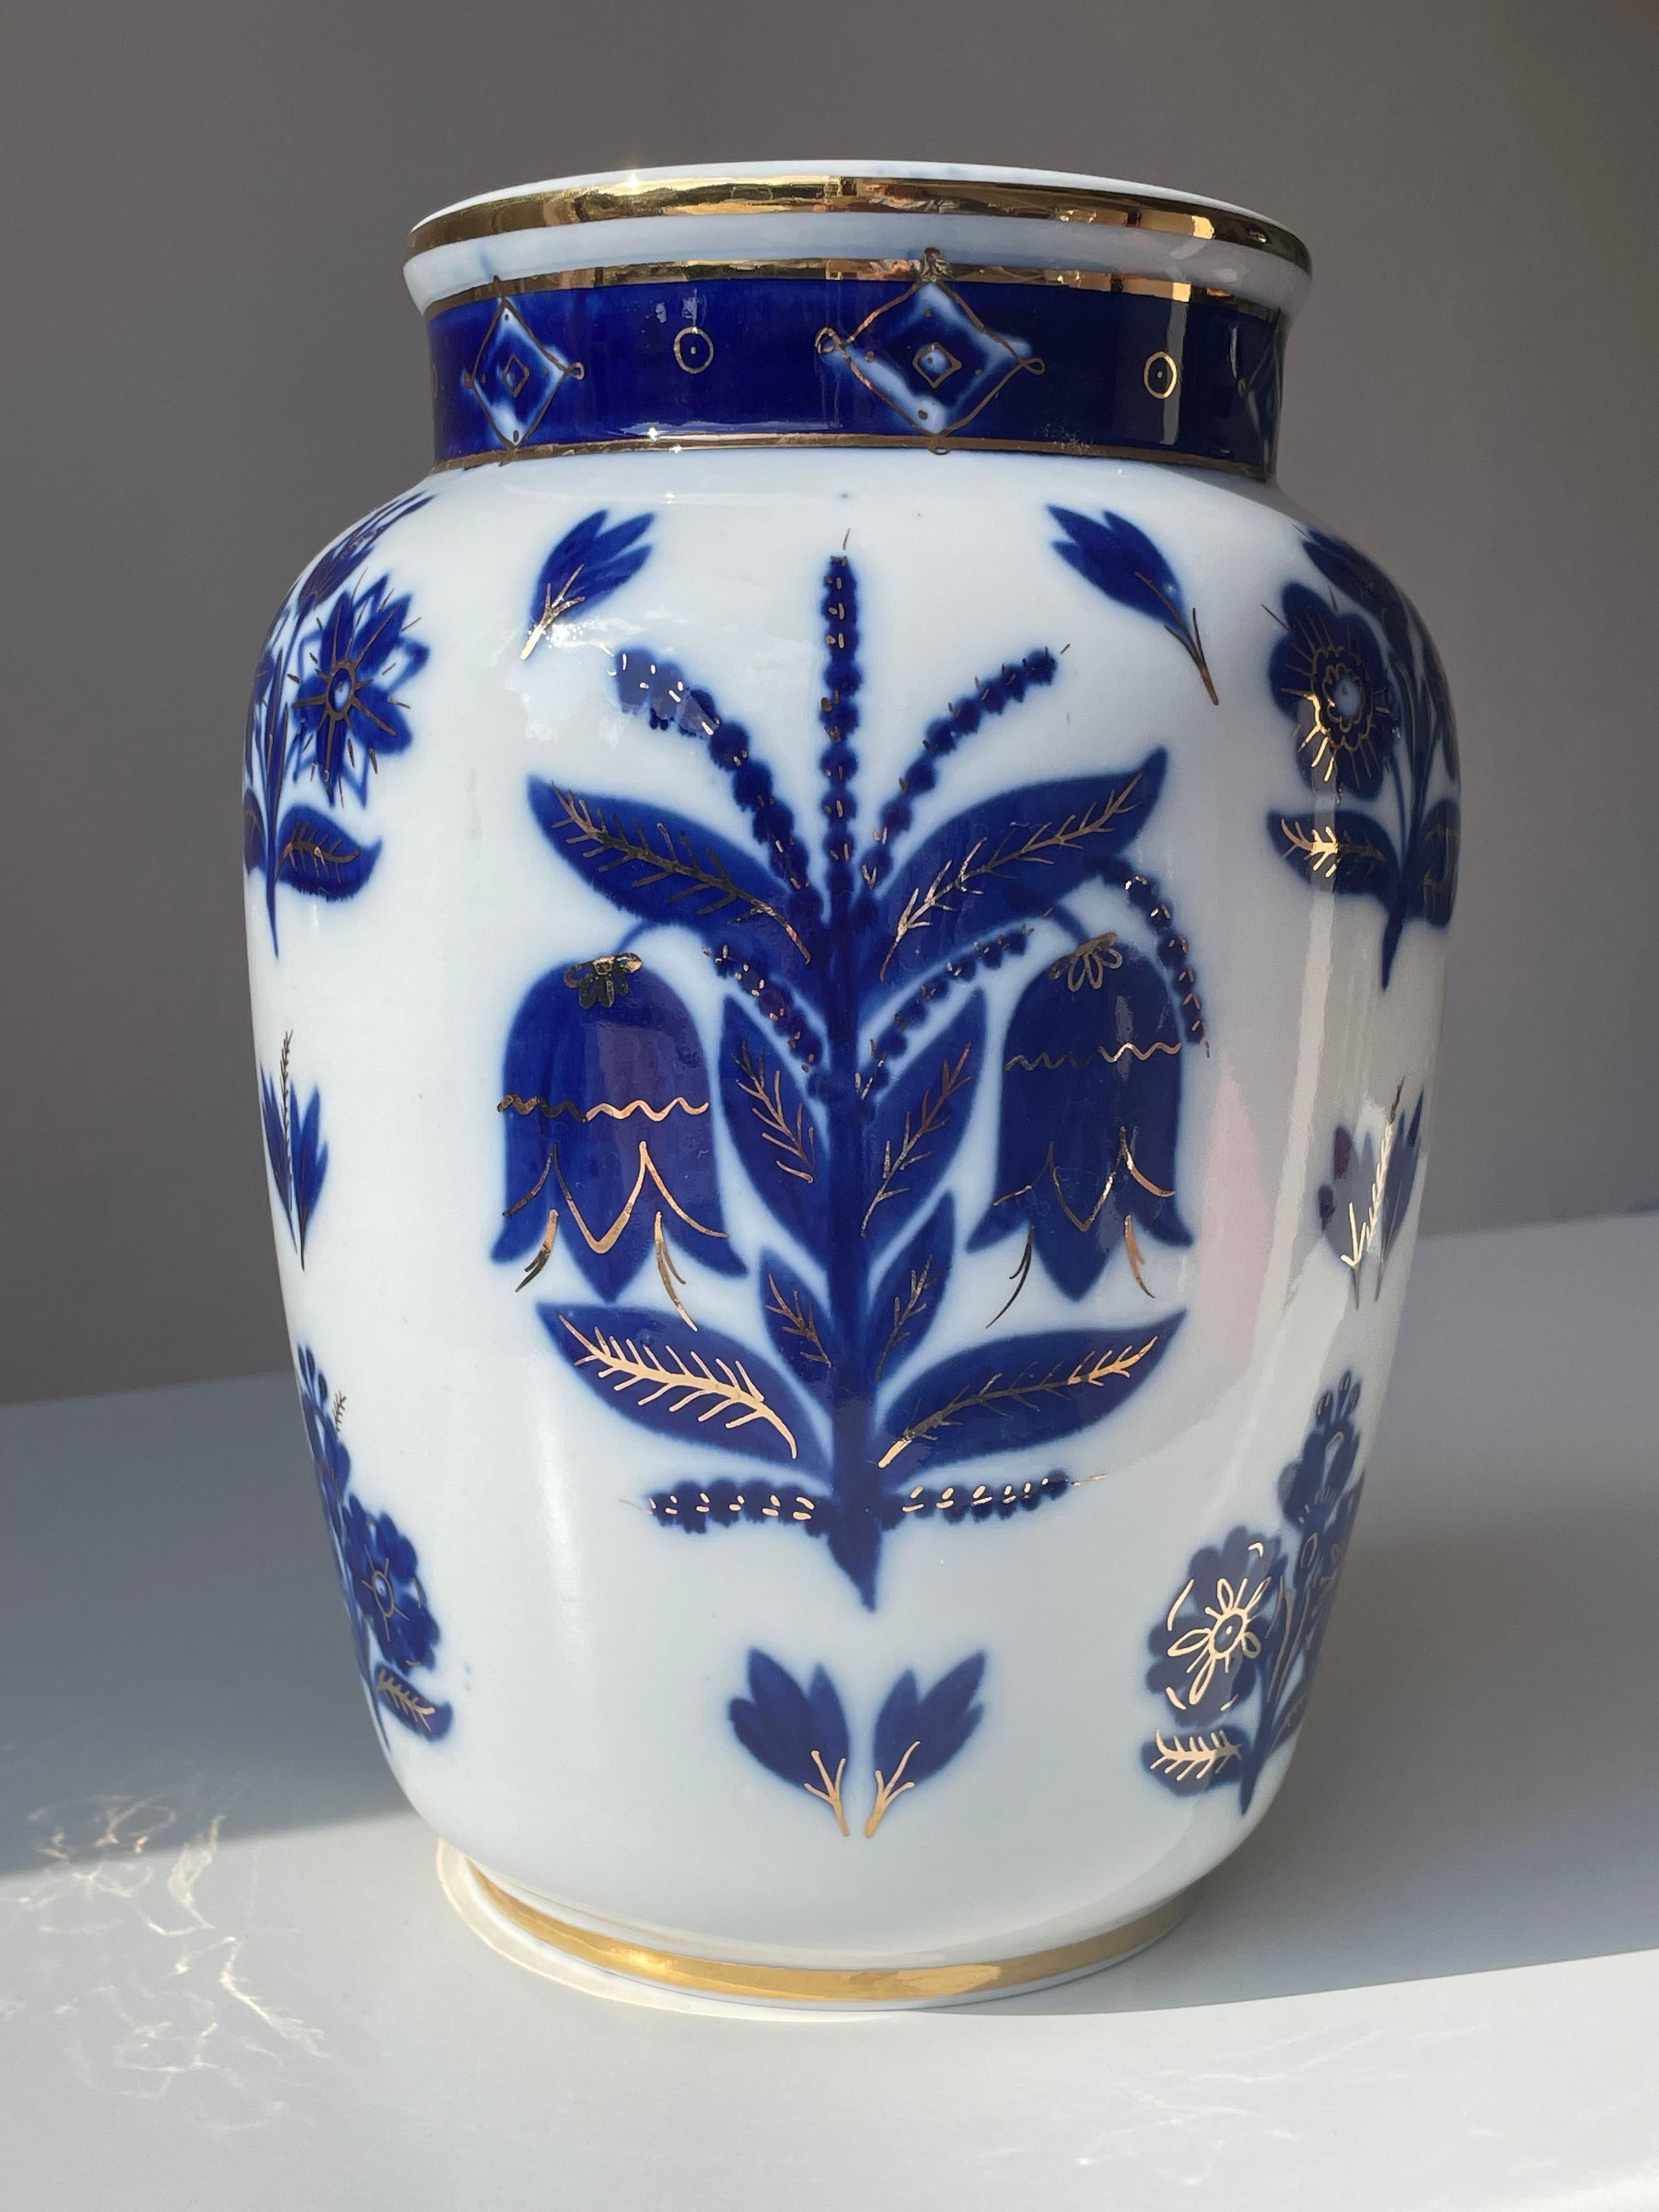 Grand vase russe en porcelaine blanche, bleue et dorée à motifs floraux, fabriqué dans les années 1950 par la manufacture de porcelaine Lomonosov, fondée en 1744. Vase organique de forme douce, de style moderne du milieu du siècle, décoré à la main